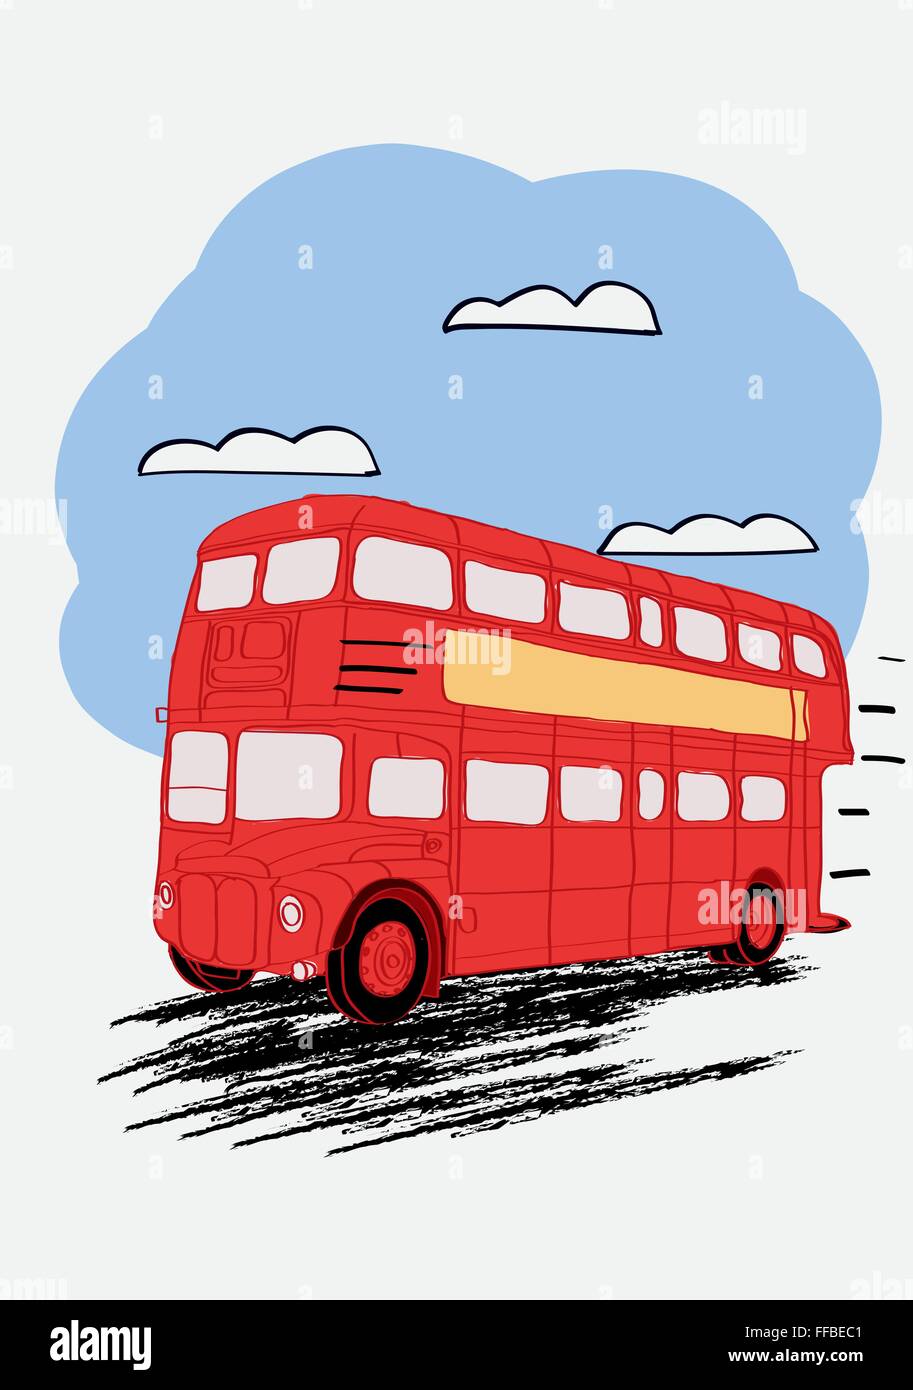 Double Decker bus rouges de Londres. Vector illustration pour la revue ou journal Illustration de Vecteur